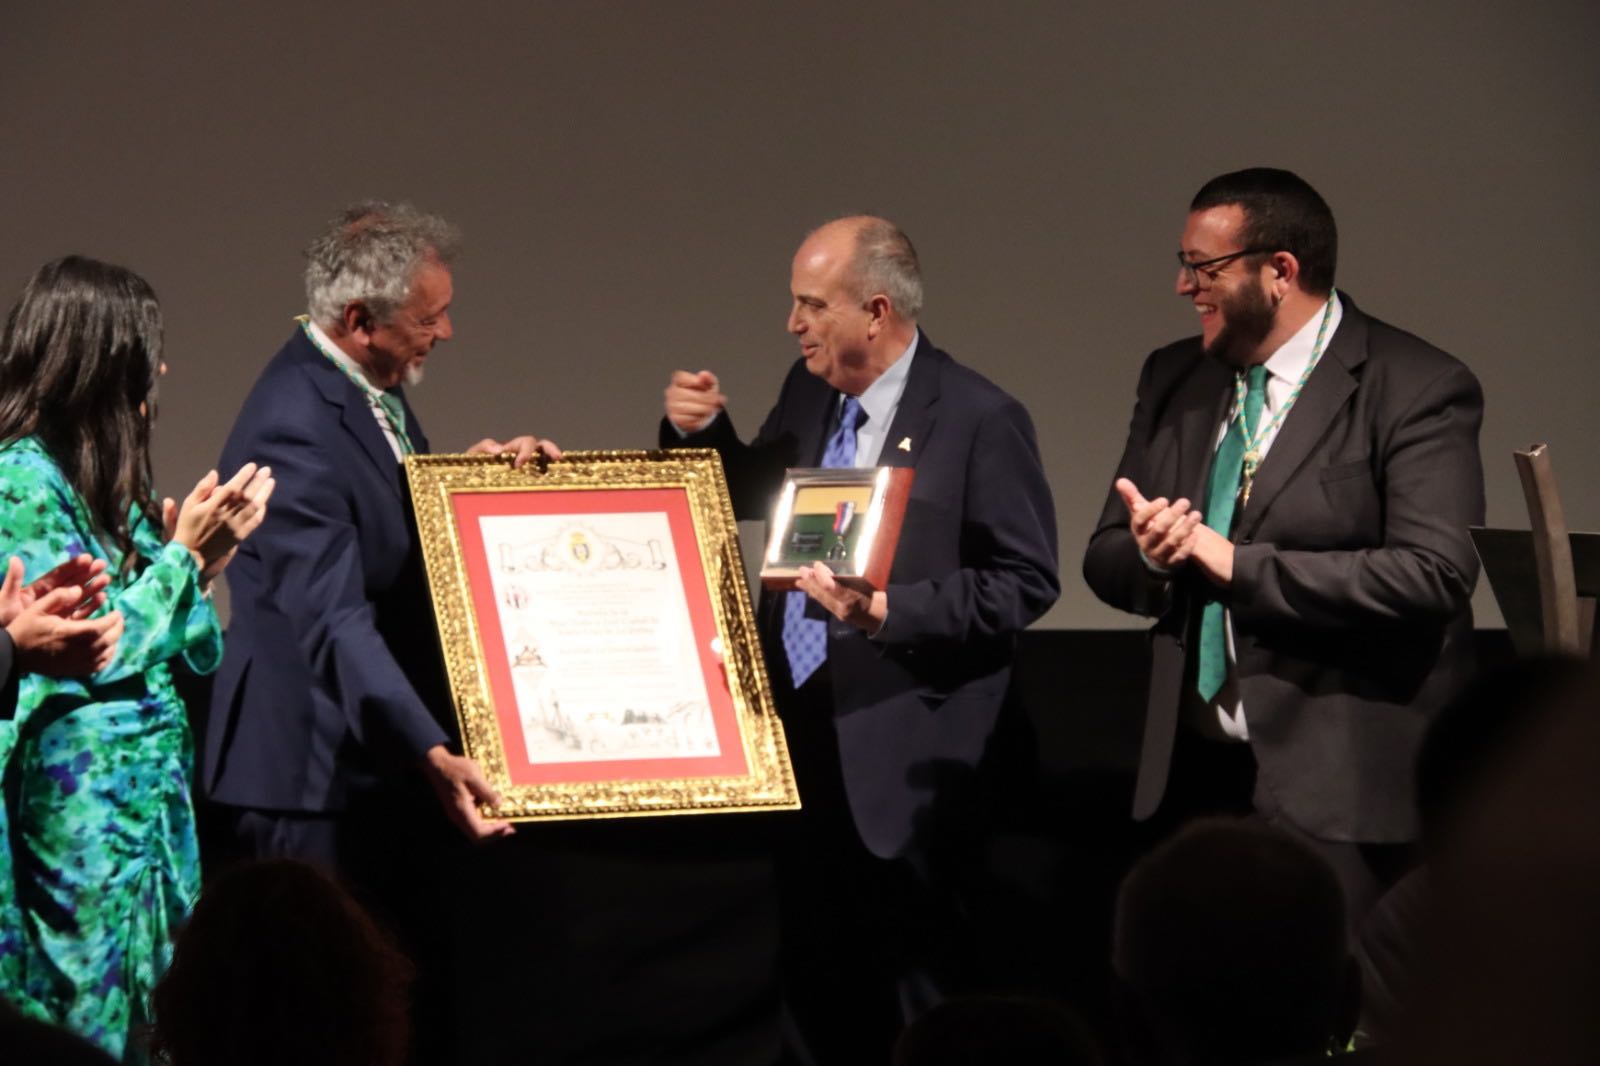 La sociedad La Investigadora recibe la medalla de la ciudad de Santa Cruz de La Palma